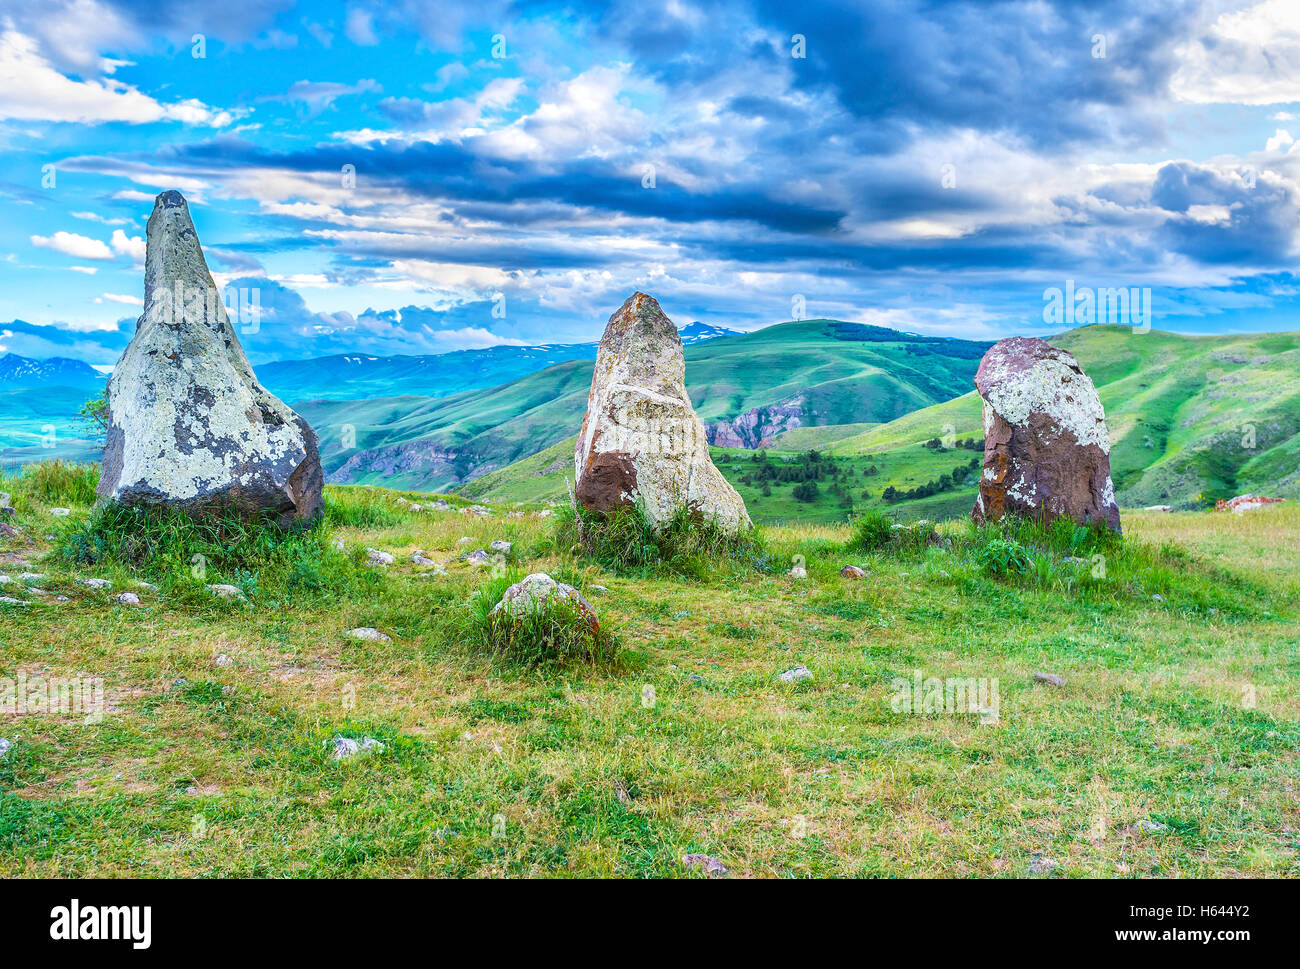 Las coloridas nubes sobre las piedras de Carenish sitio arqueológico, también conocido como Zorats Karer, Sisian, Syunik, Armenia Foto de stock